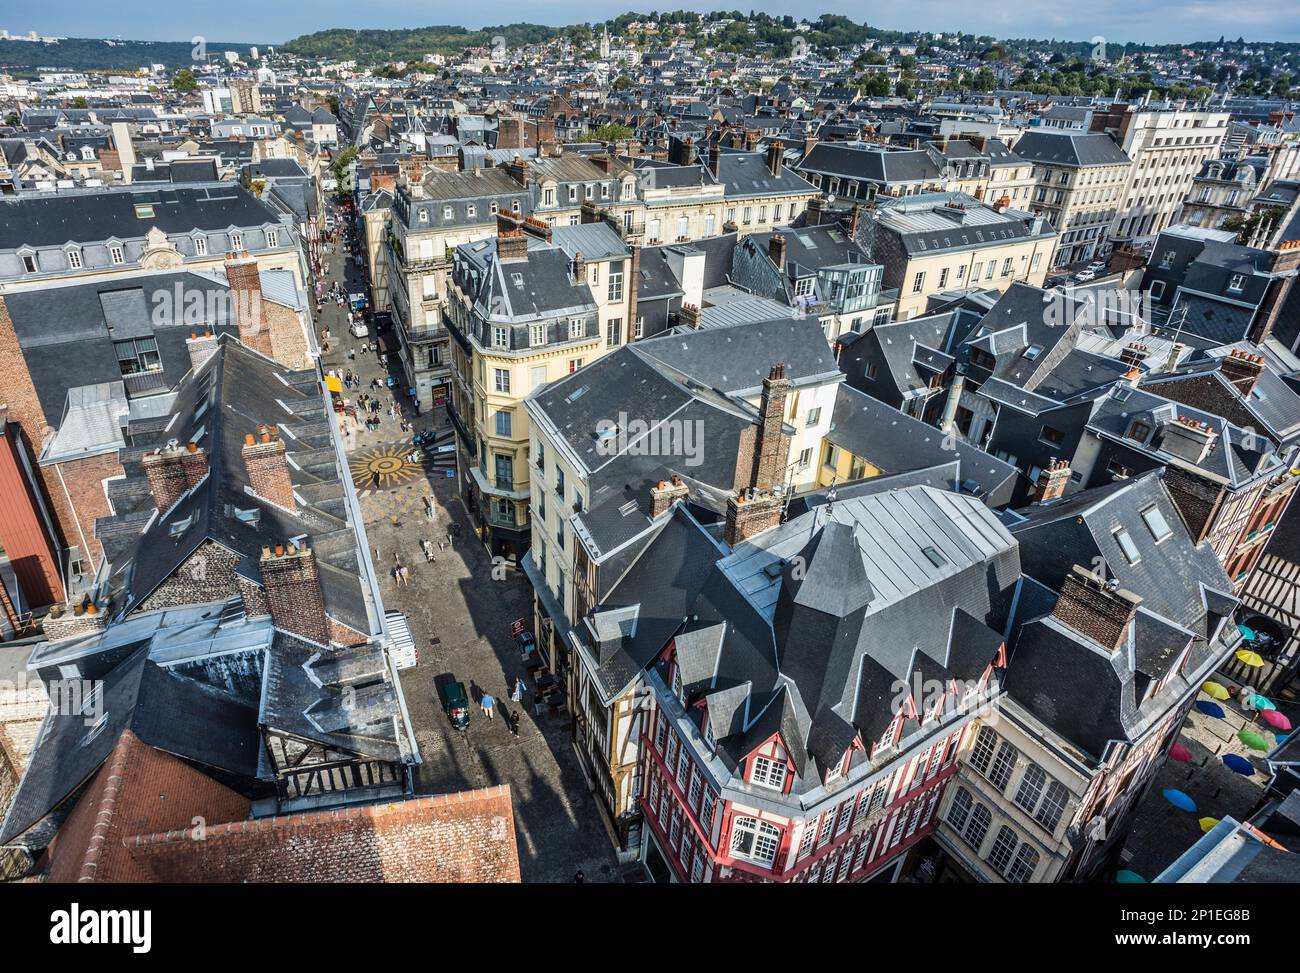 Vue sur les toits de Rouen depuis le beffroi du gros horloge, l'horloge à gratin, donnant sur la rue du gros-horloge, Rouen, Normandie, France Banque D'Images